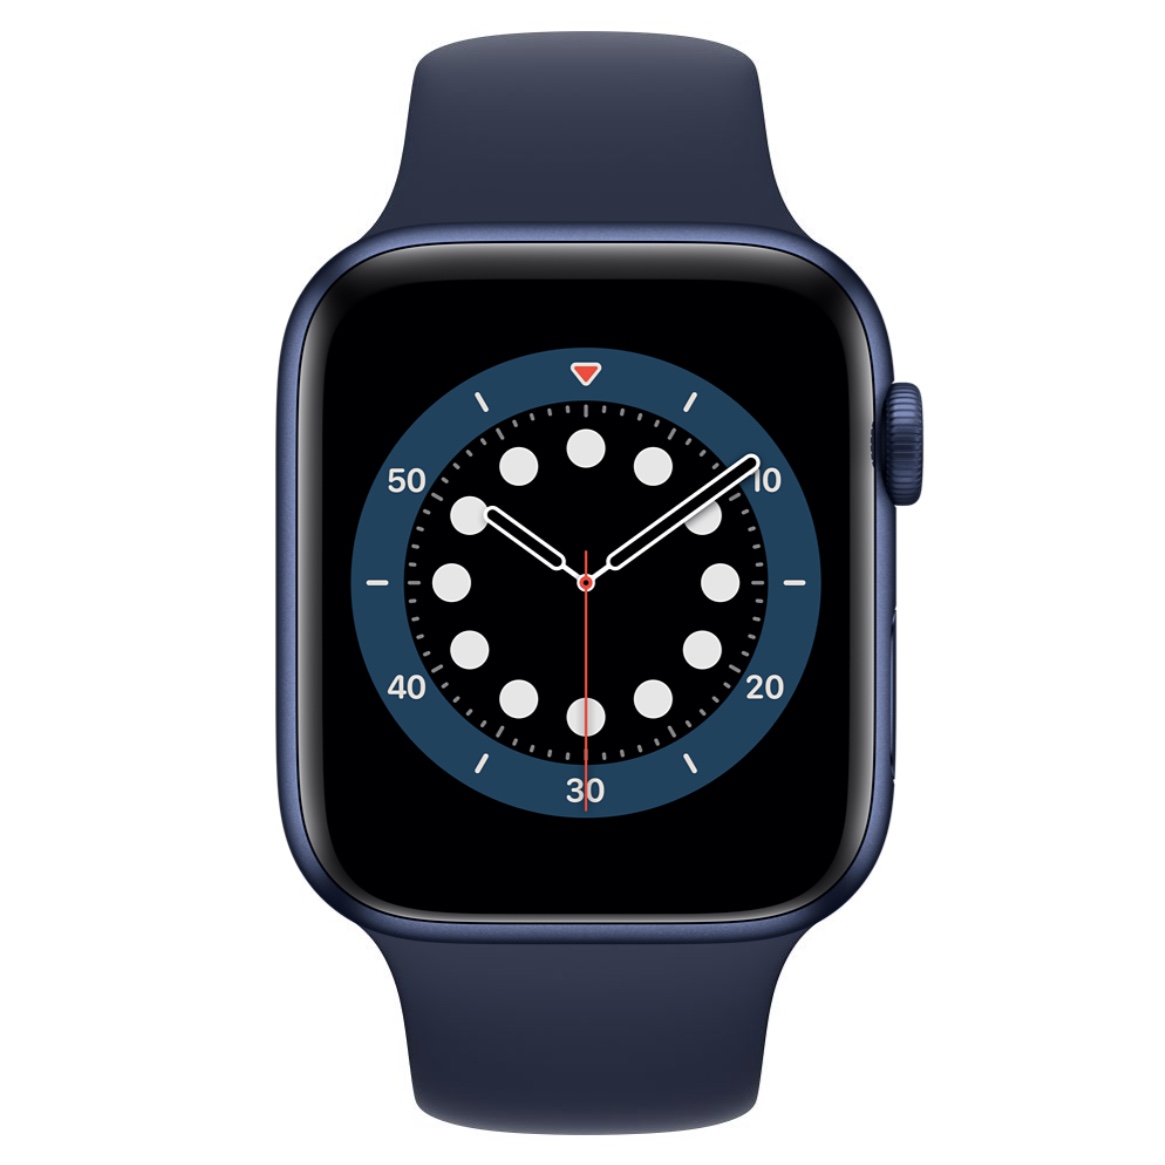 _images/informatica-apple-watch.jpg